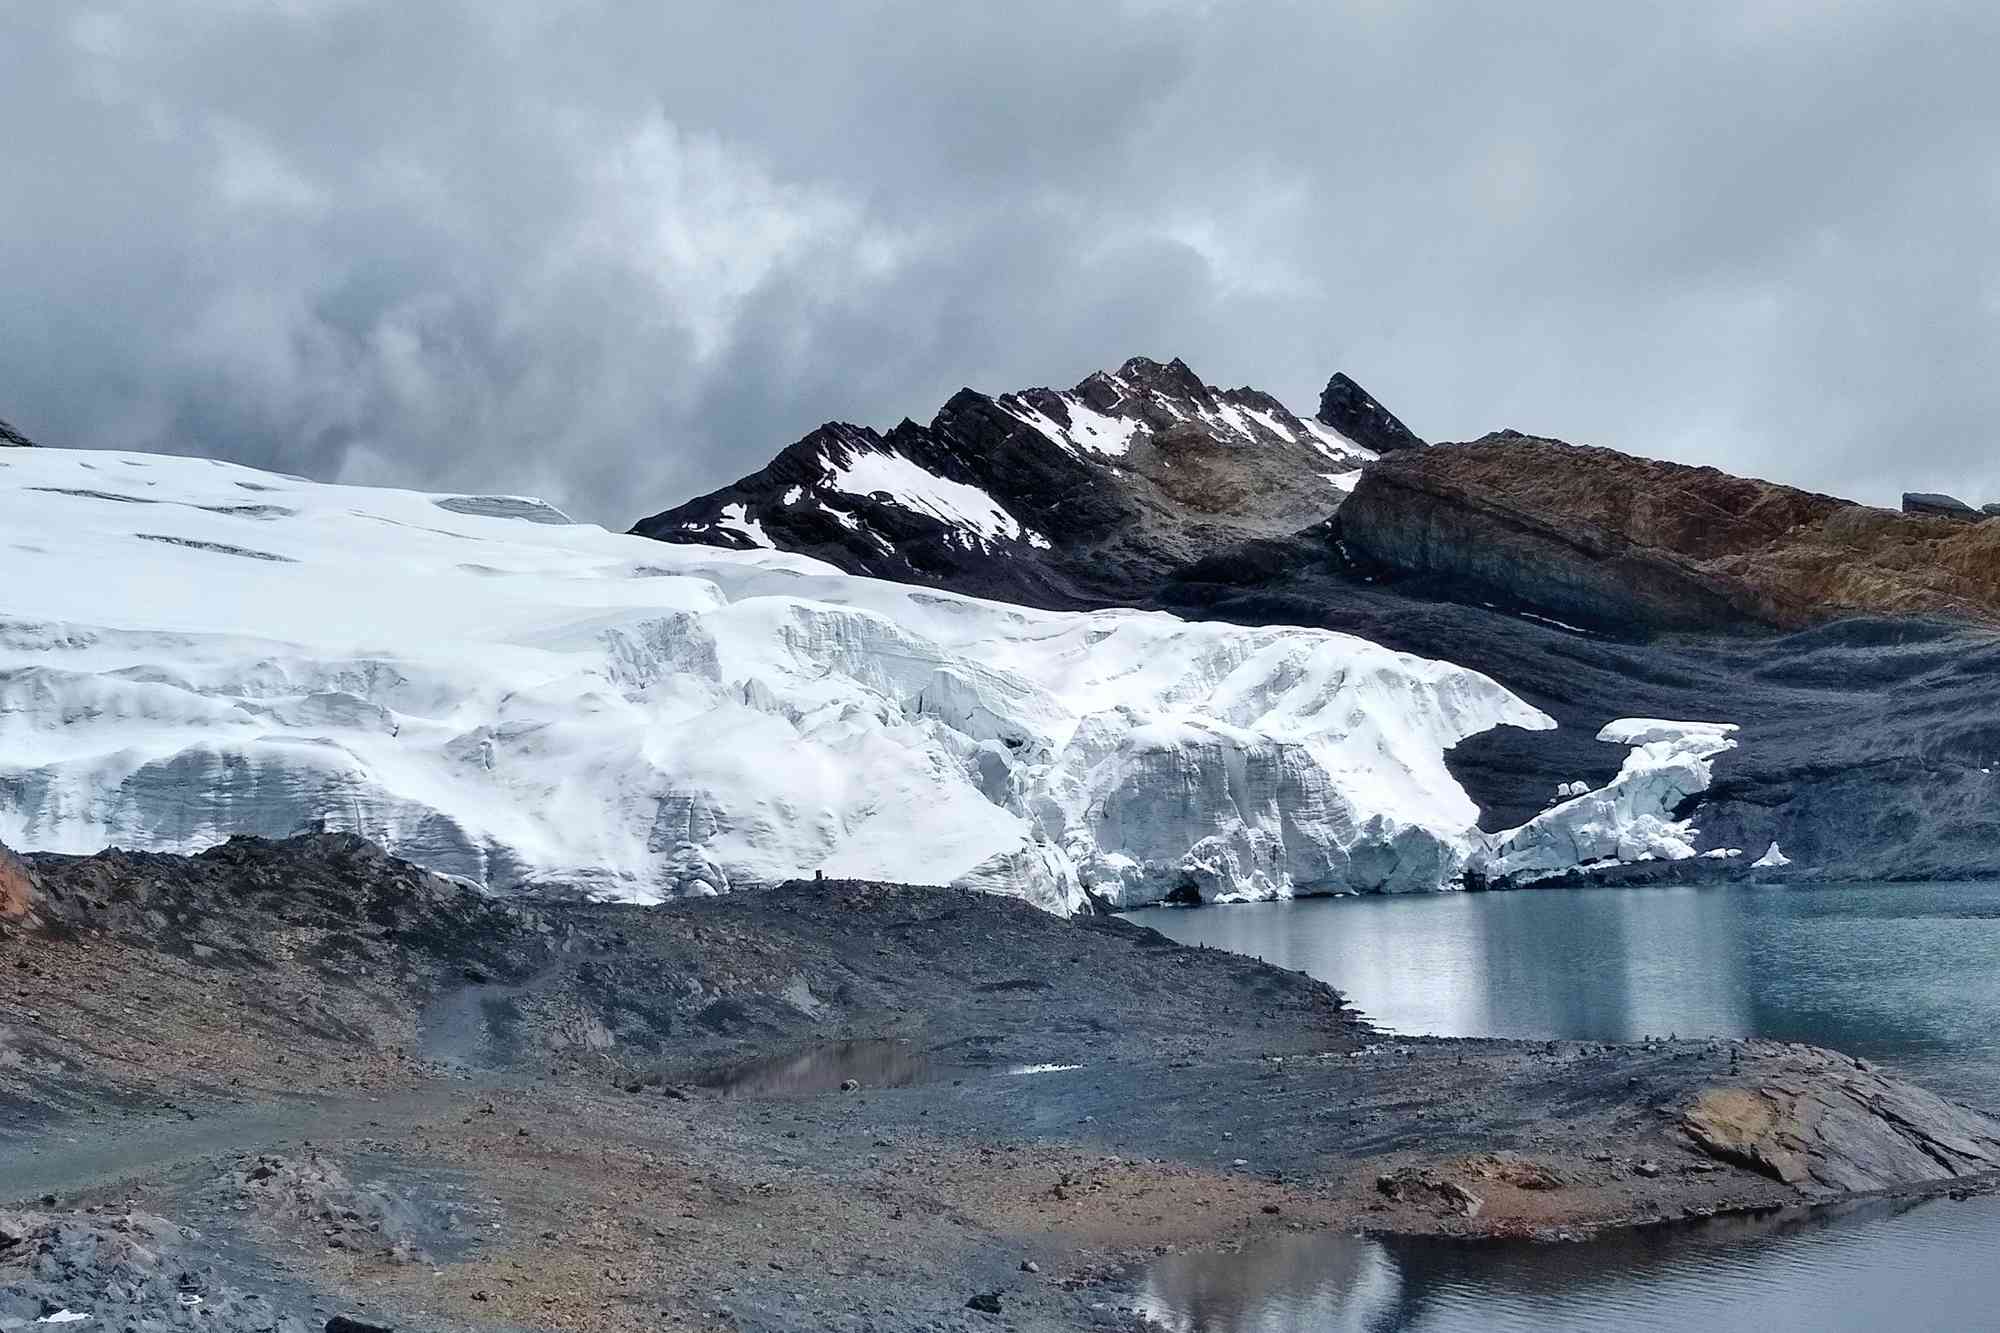 El famoso glaciar Pastoruri de Perú bordeando una bahía